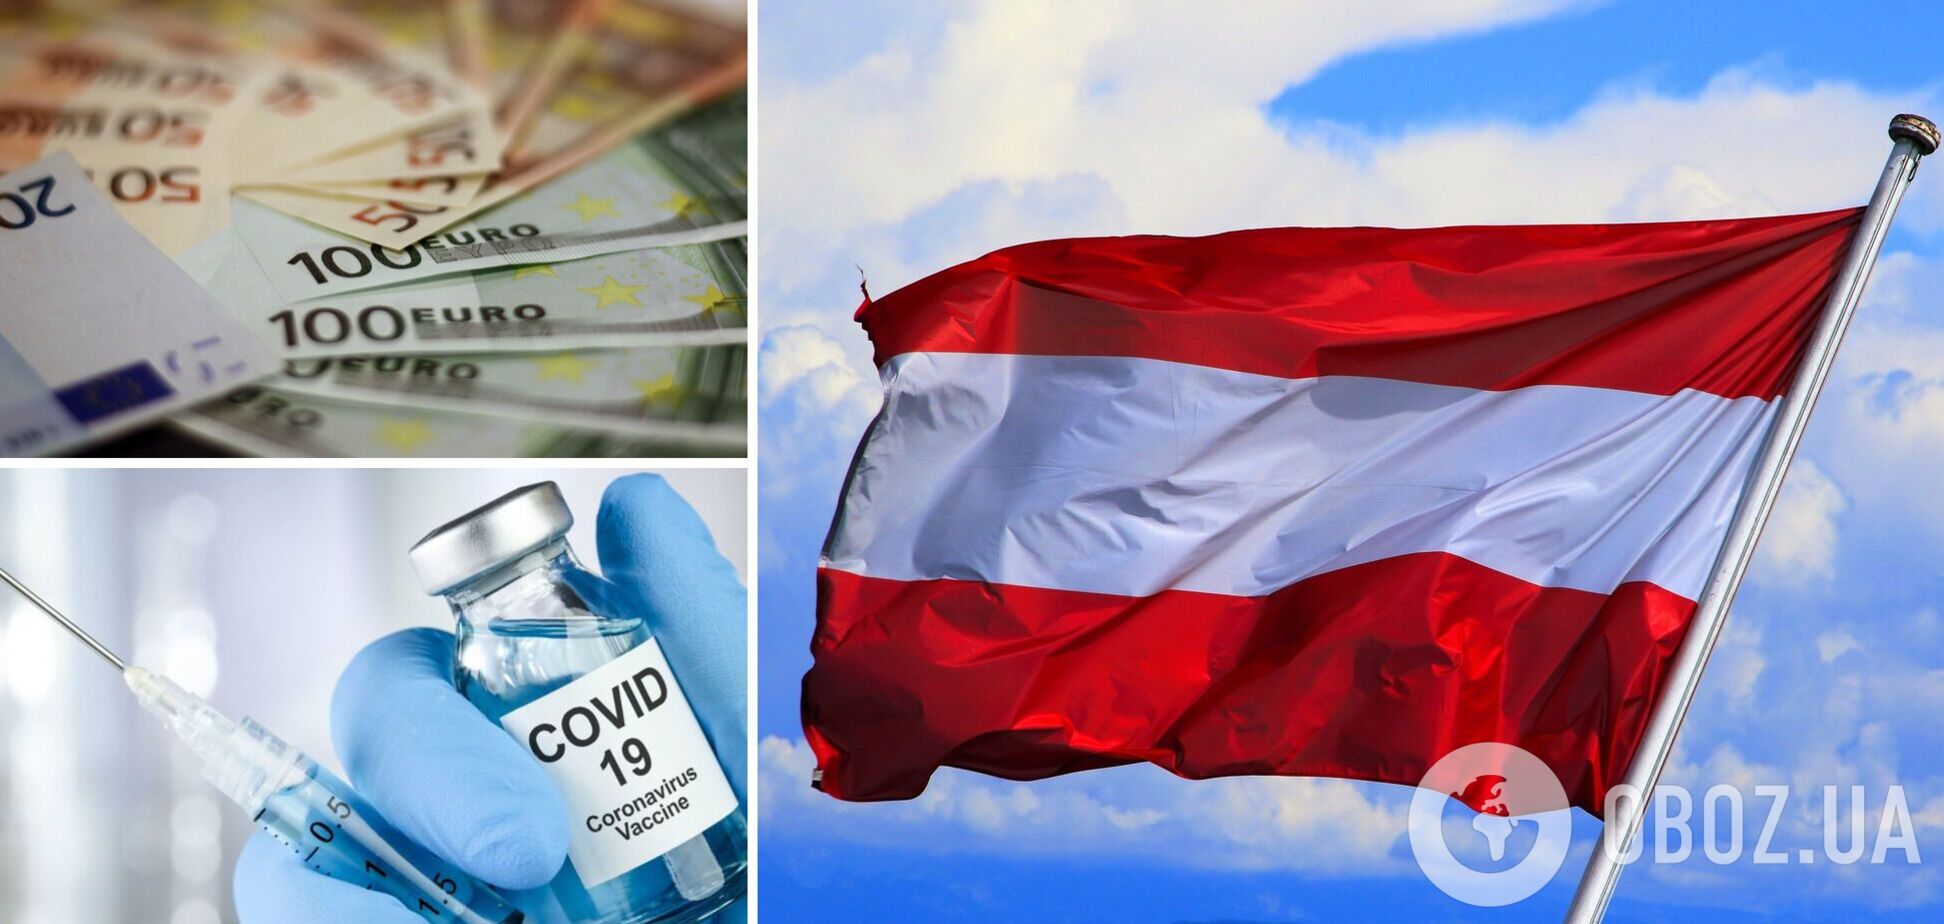 Вакцинированные австрийцы могут получить по 500 евро